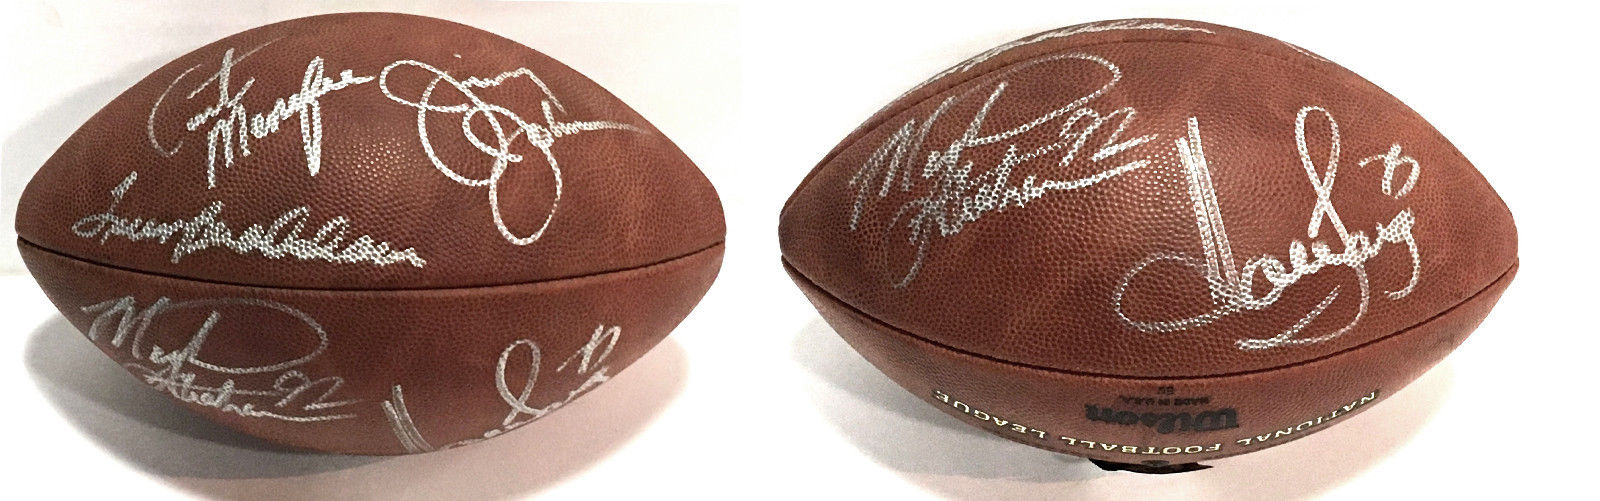 Fox NFL Sunday signed 5 auto Pro Football Terry Bradshaw Michael Strahan PSA LOA